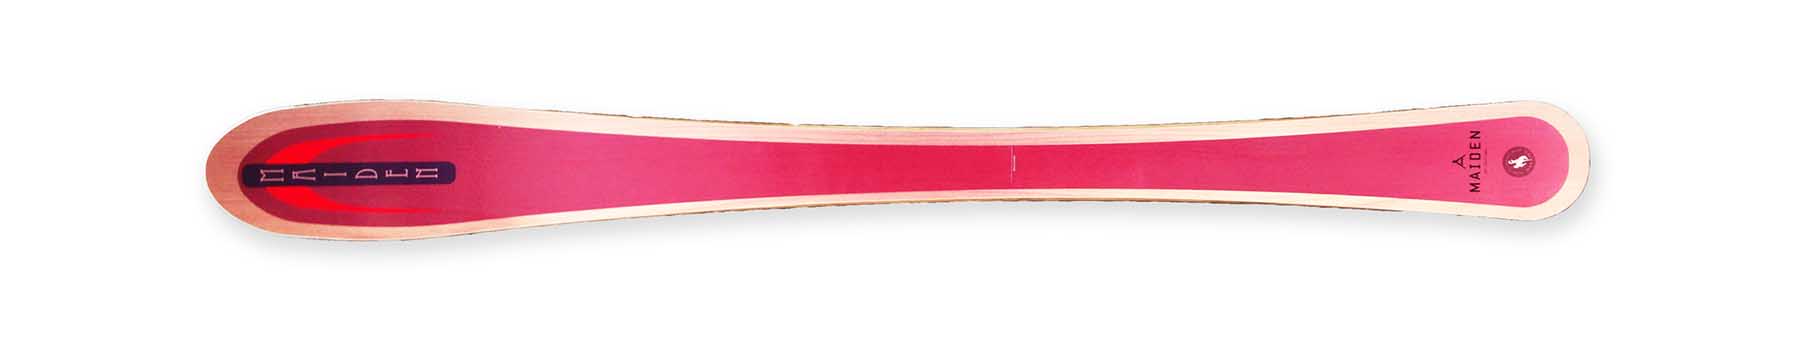 Maiden Skis - Sit Ski: RED Custom